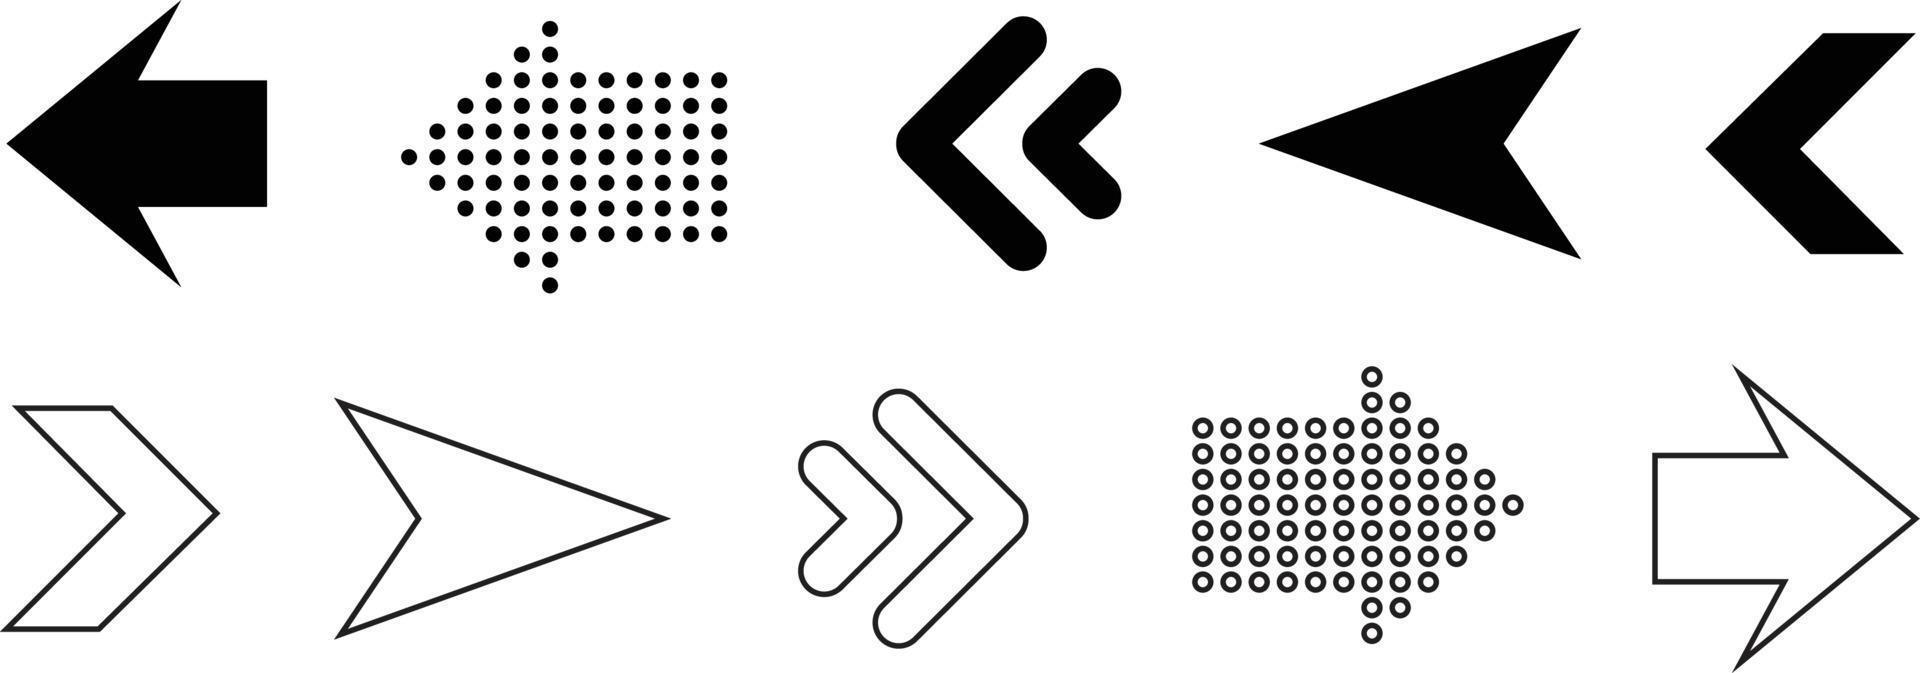 Arrows icons. Arrow icon. Arrow vector collection. Arrow. Cursor. Modern simple arrows. Vector illustration.